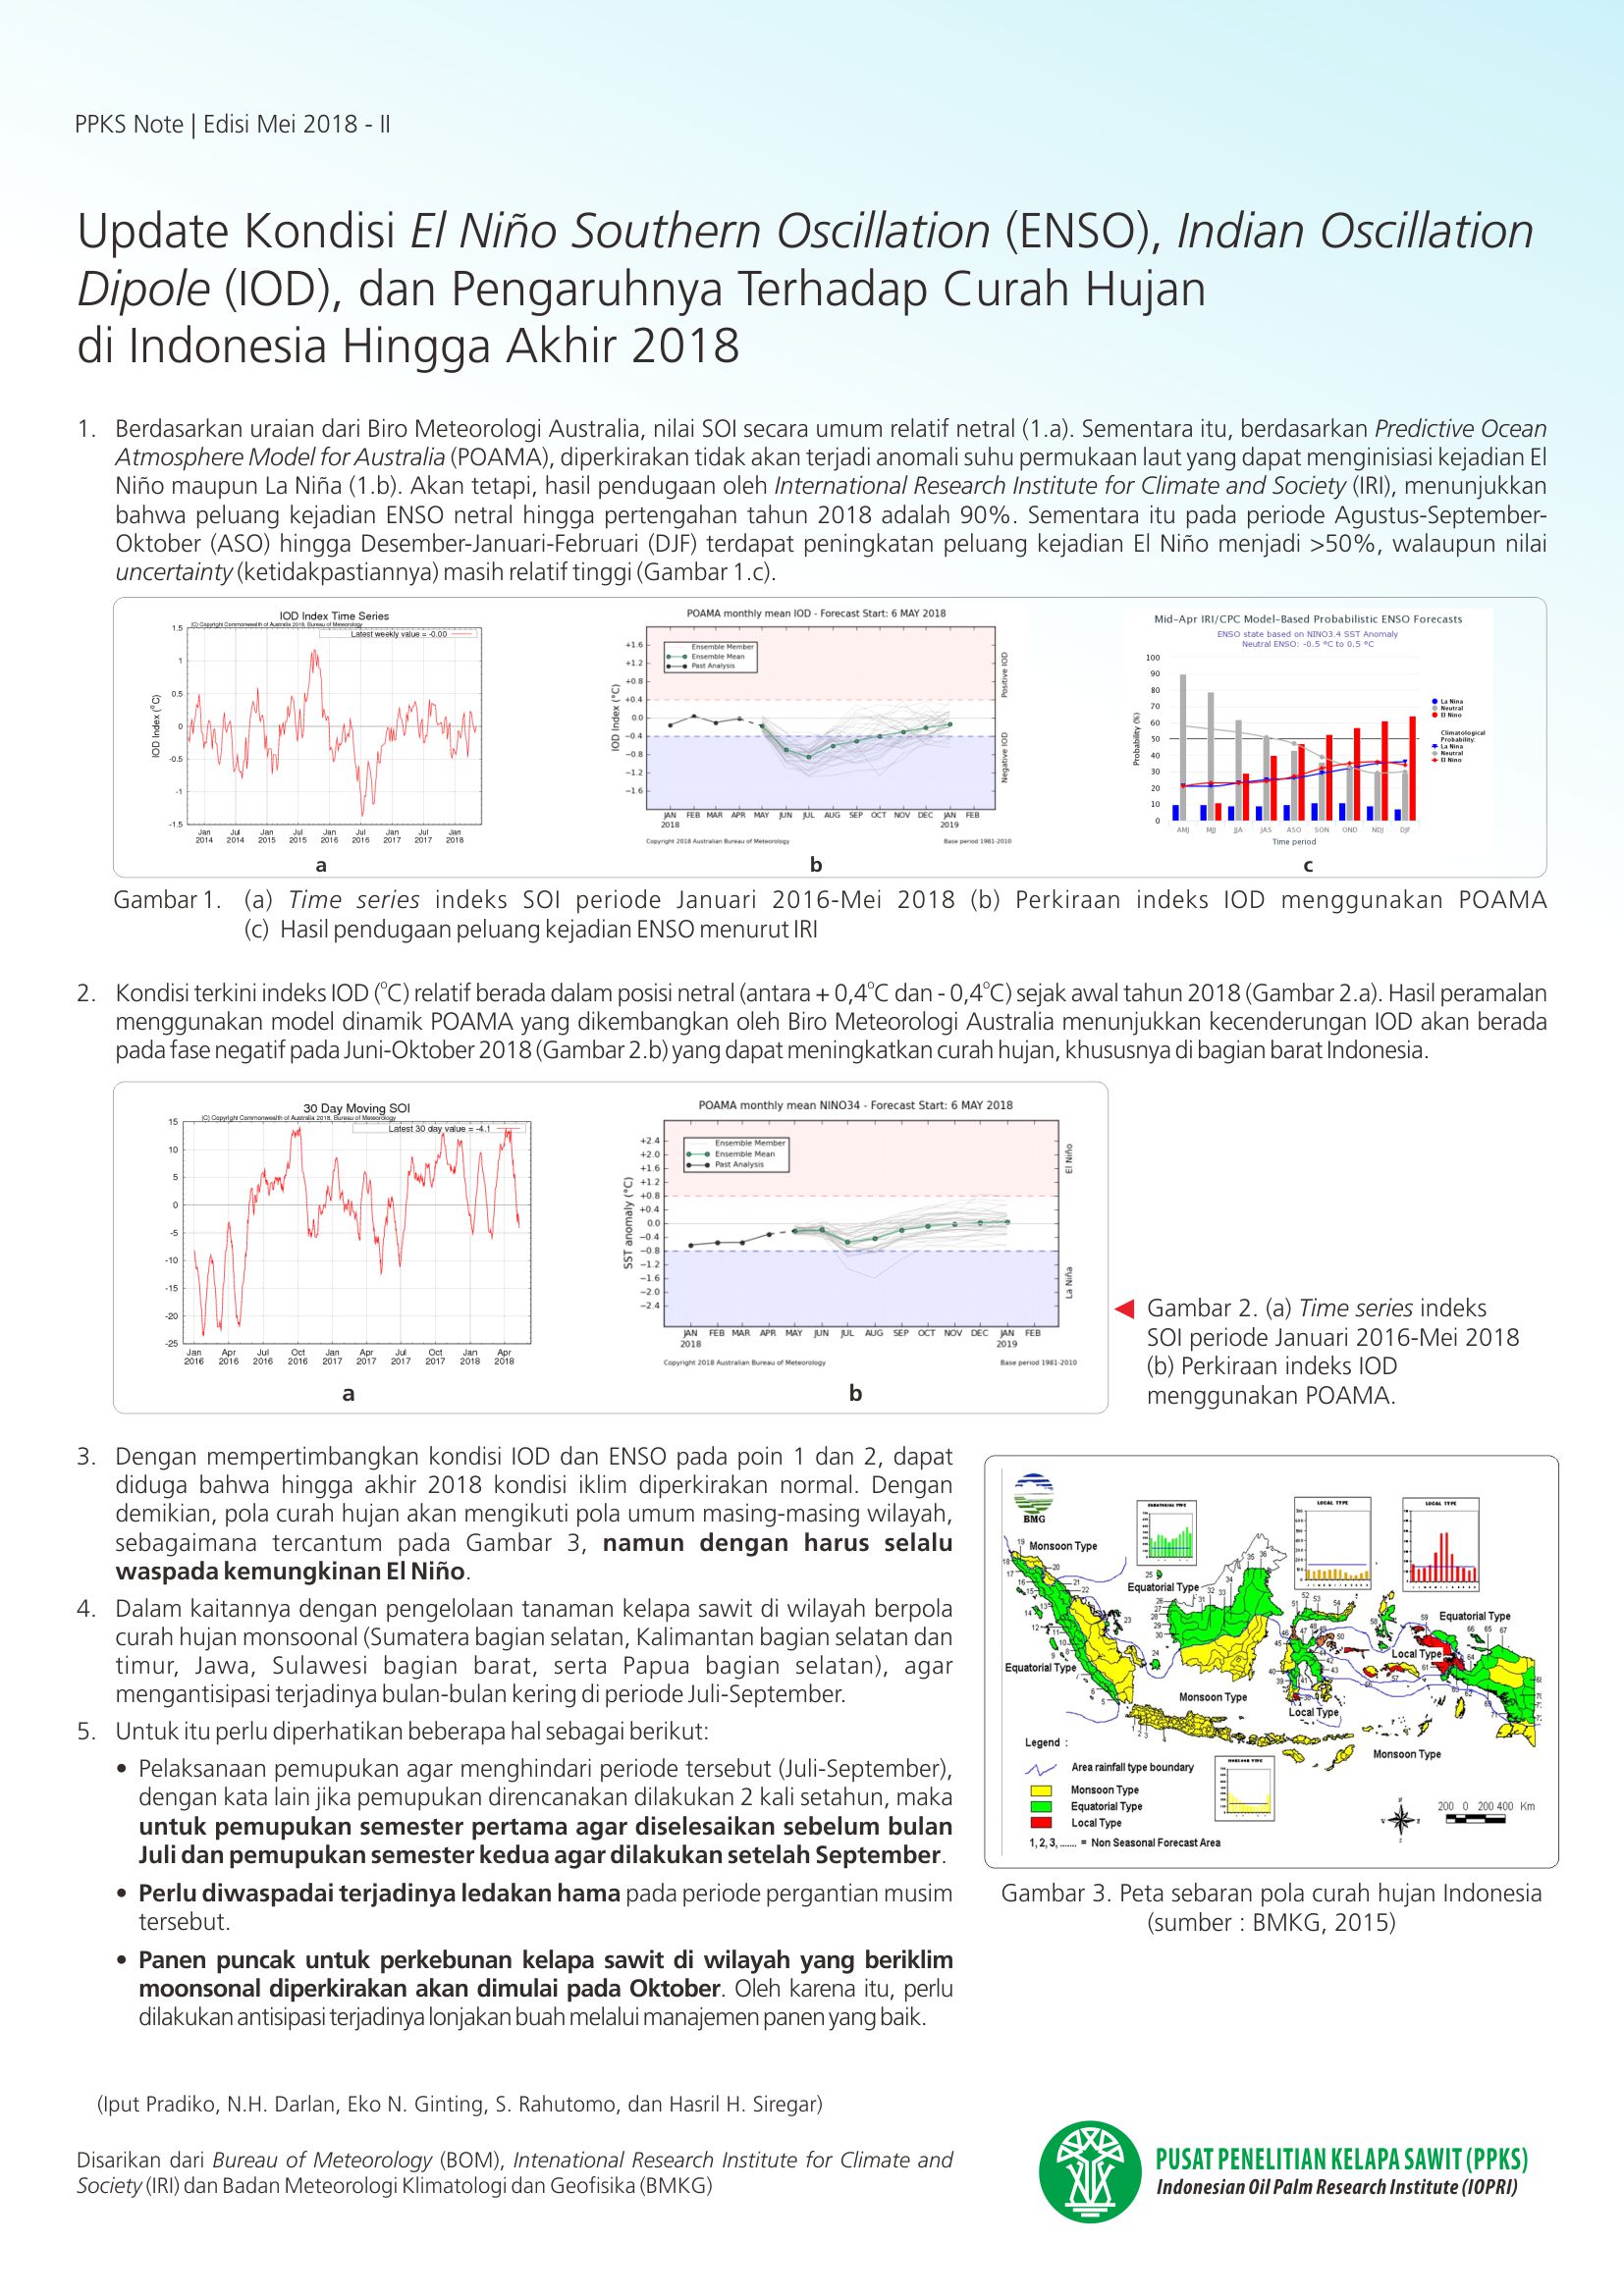 EDISI MEI 2018 II - Update Kondisi El Nino Southern Oscillation (ENSO), Indian Oscillation Dipole (IOD), dan Pengaruhnya Terhadap Curah Hujan di Indonesia Hingga Akhir 2018